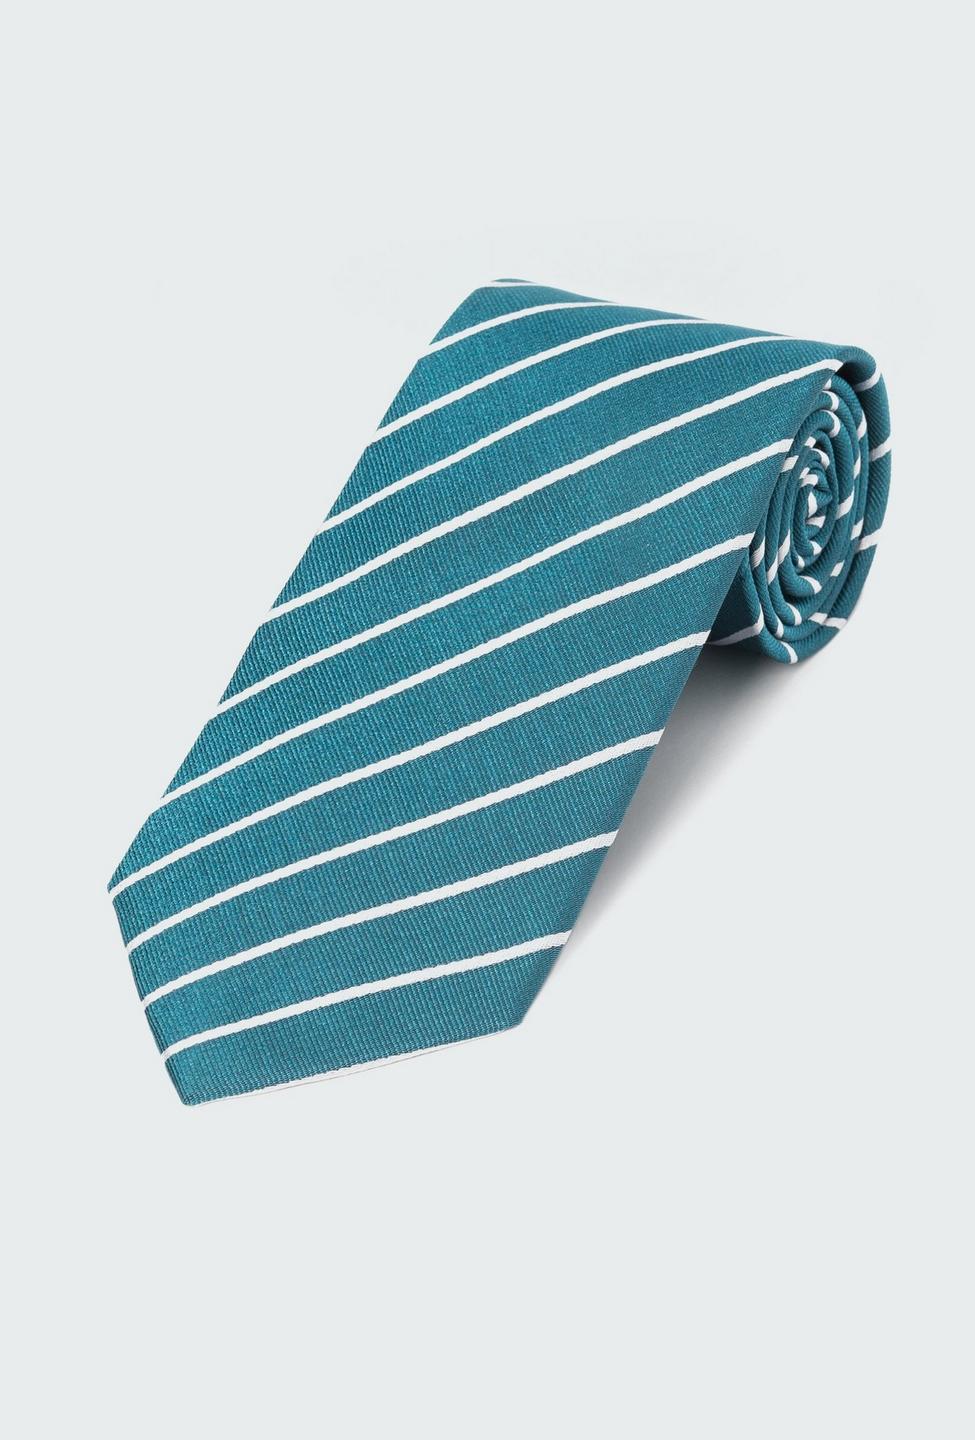 Teal Stripe Tie